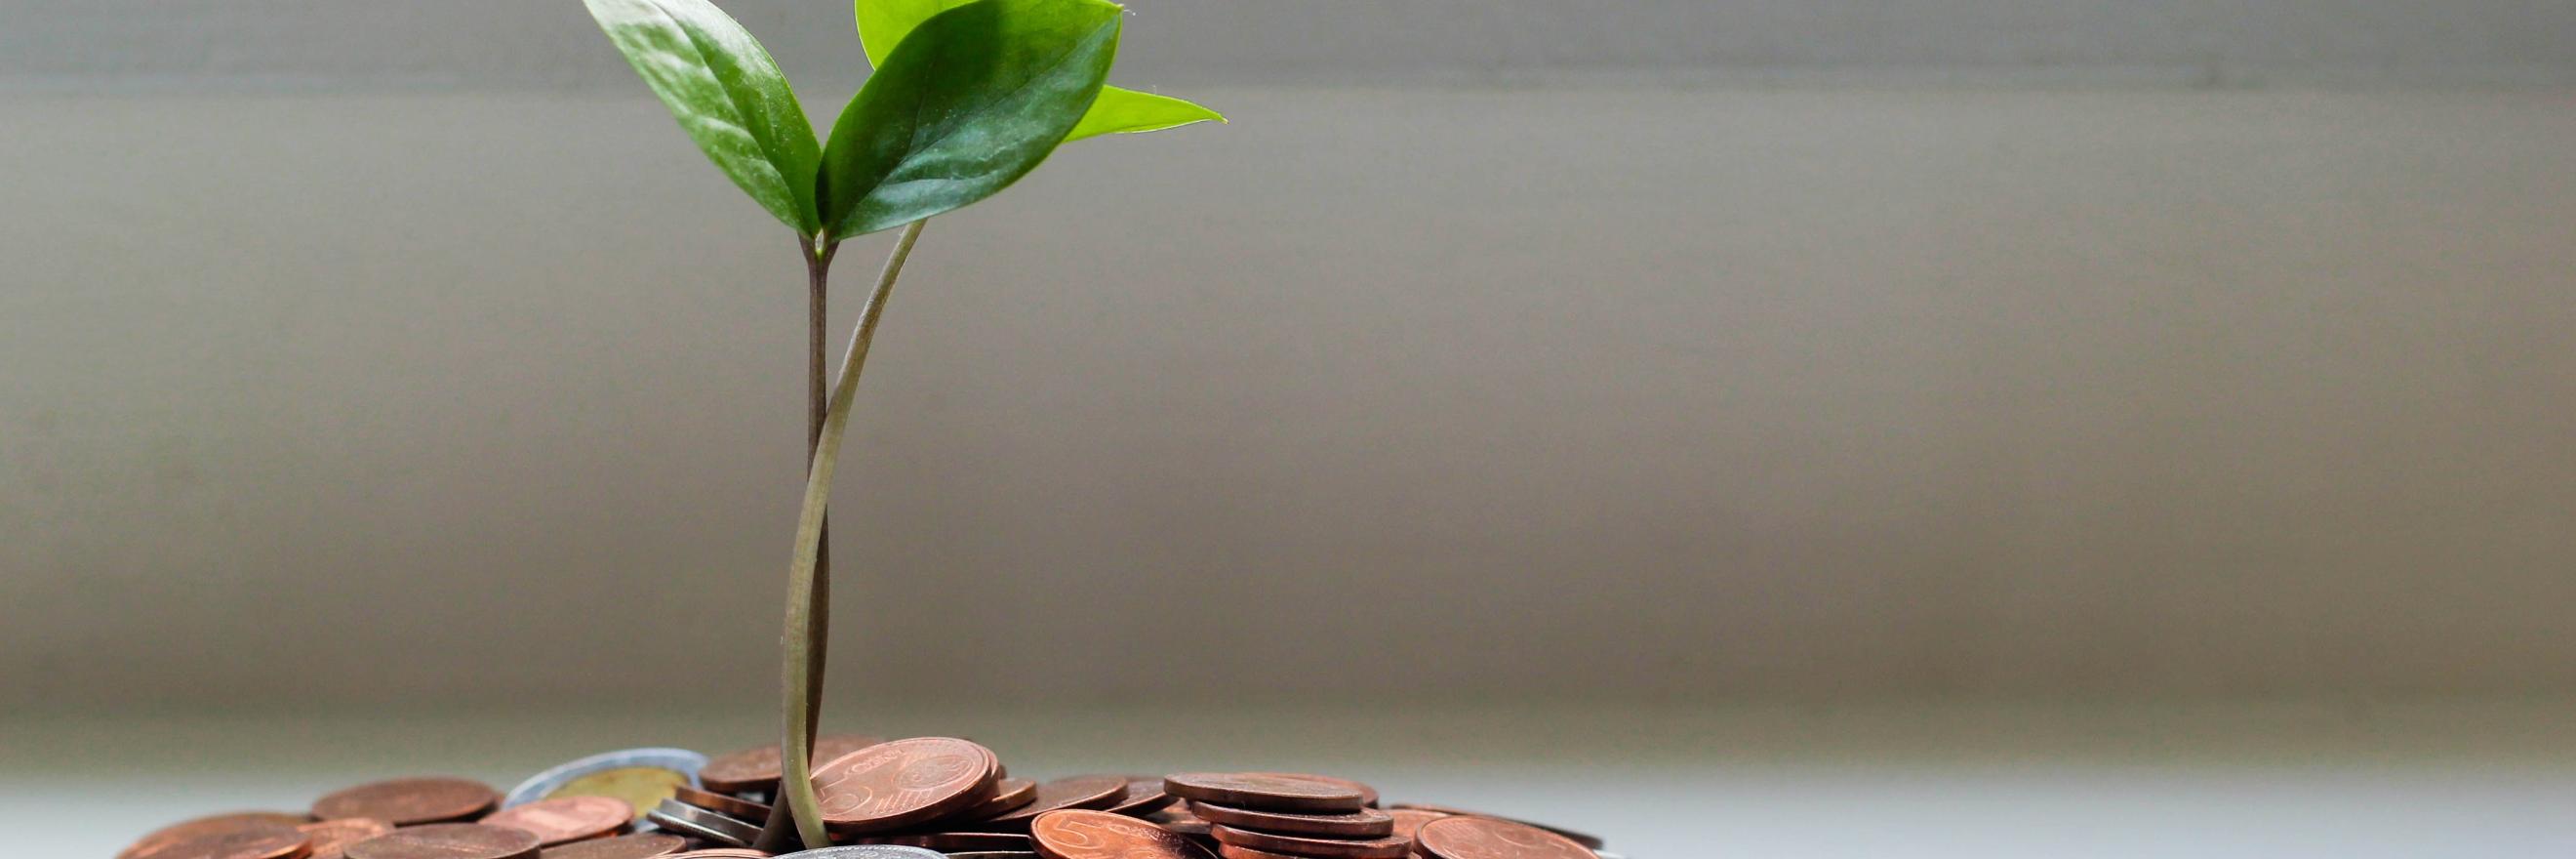 Eine Pflanze wächst aus einigen Geldmünzen